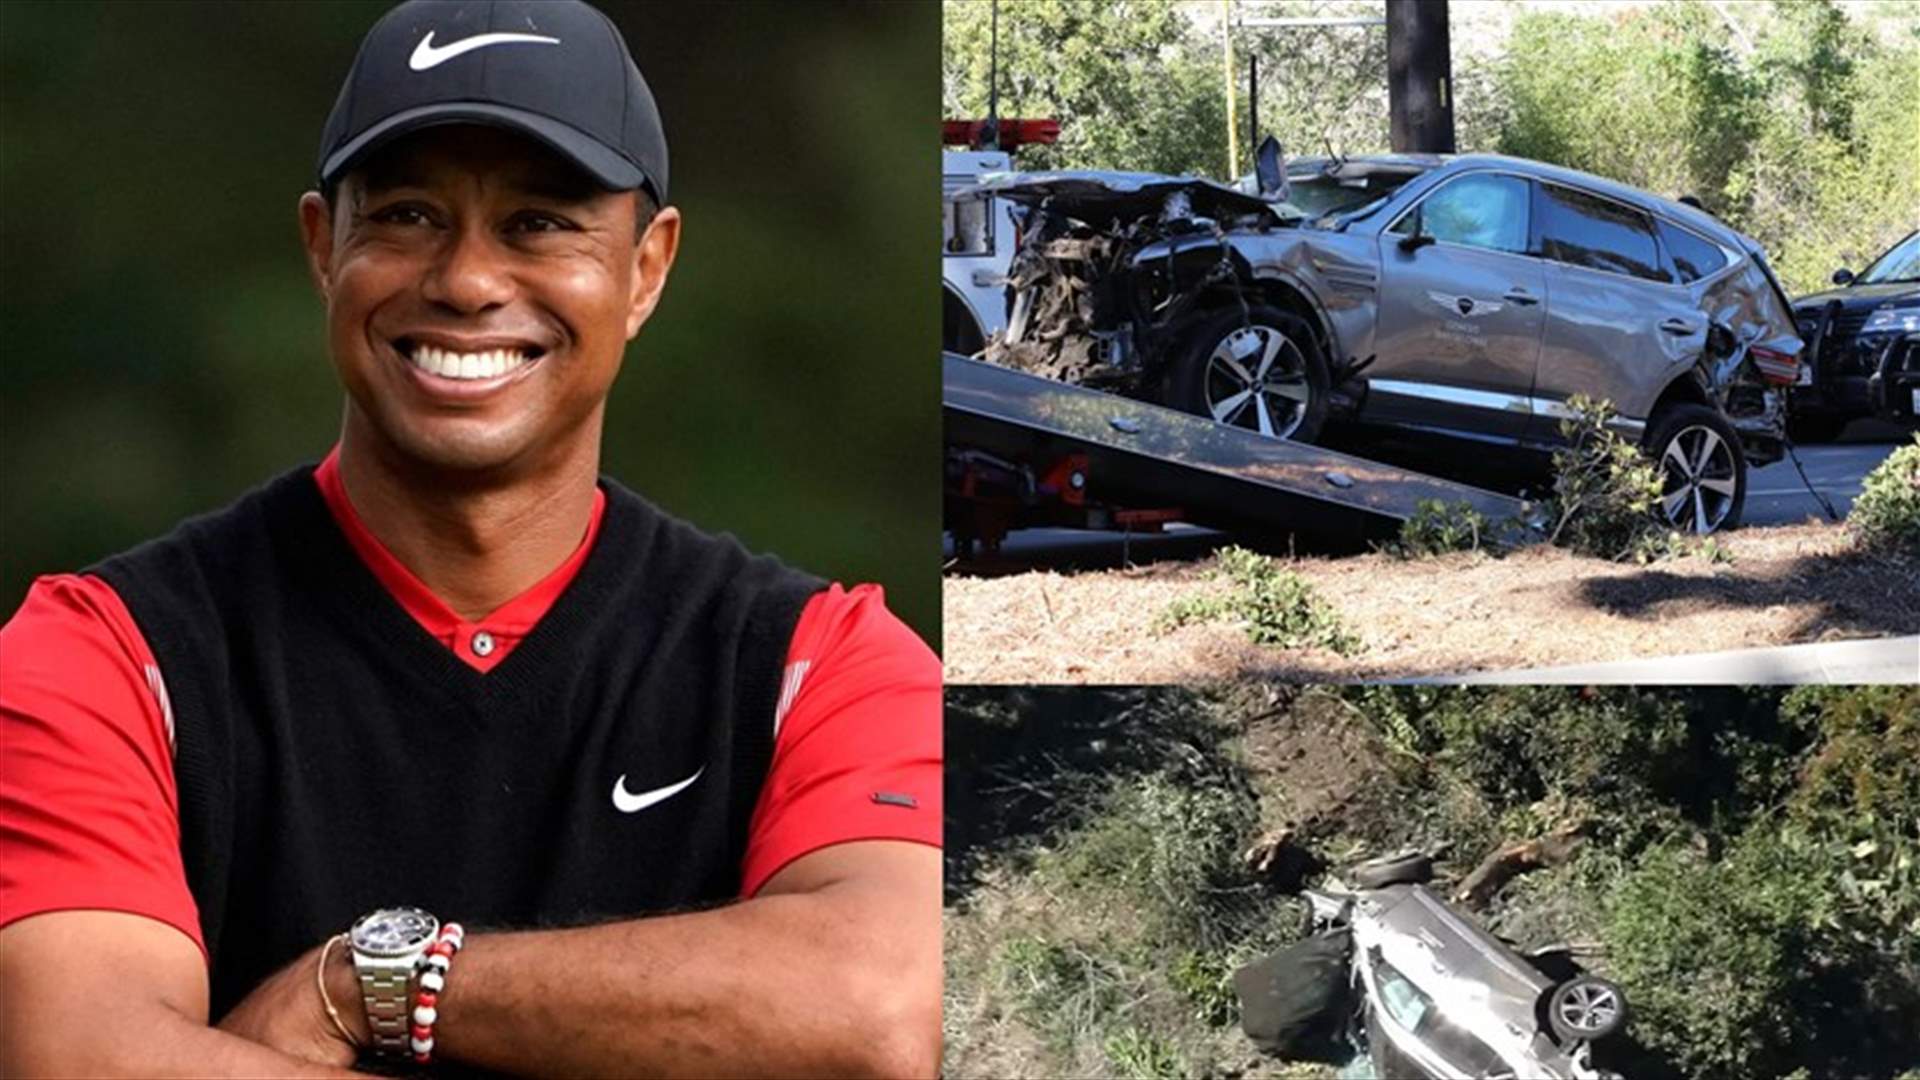 بعد تعرّضه لحادث سير خطير... كيف هي حالة لاعب الغولف تايغر وودز؟